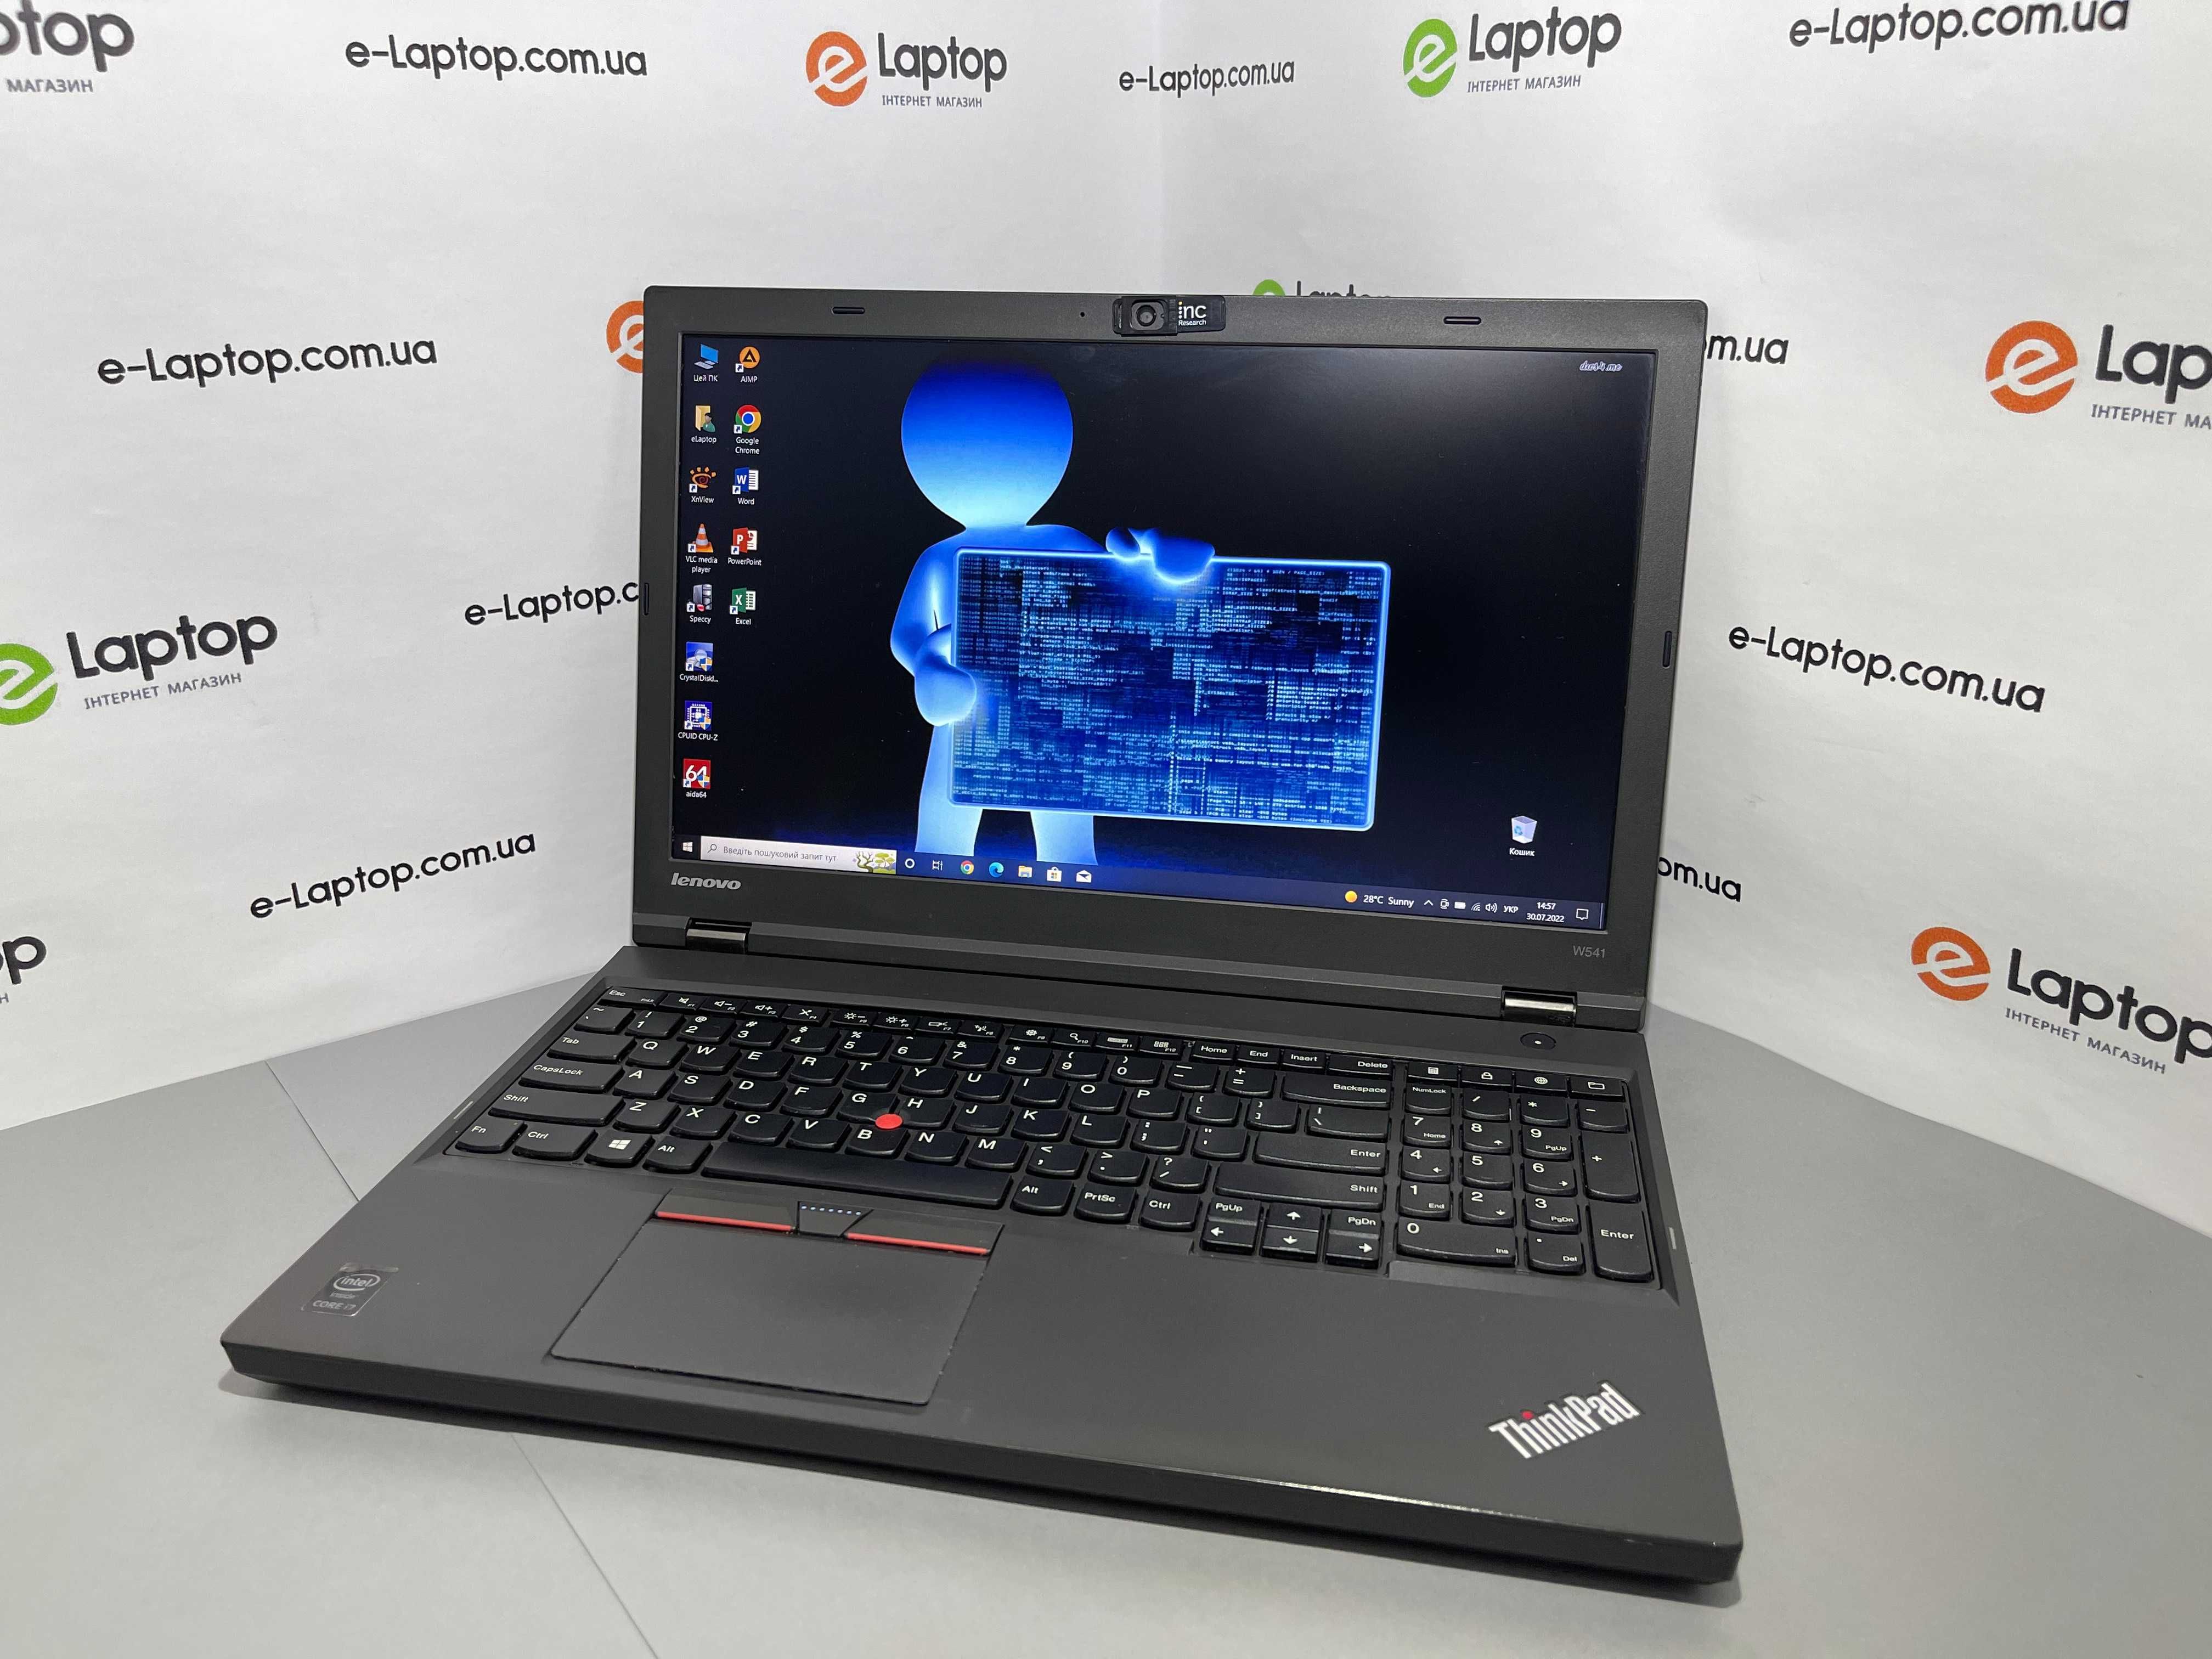 Lenovo ThinkPad W541/i7-4710MQ/16GB/SSD 256GB/nVidia K1100M, 2GB/FHD